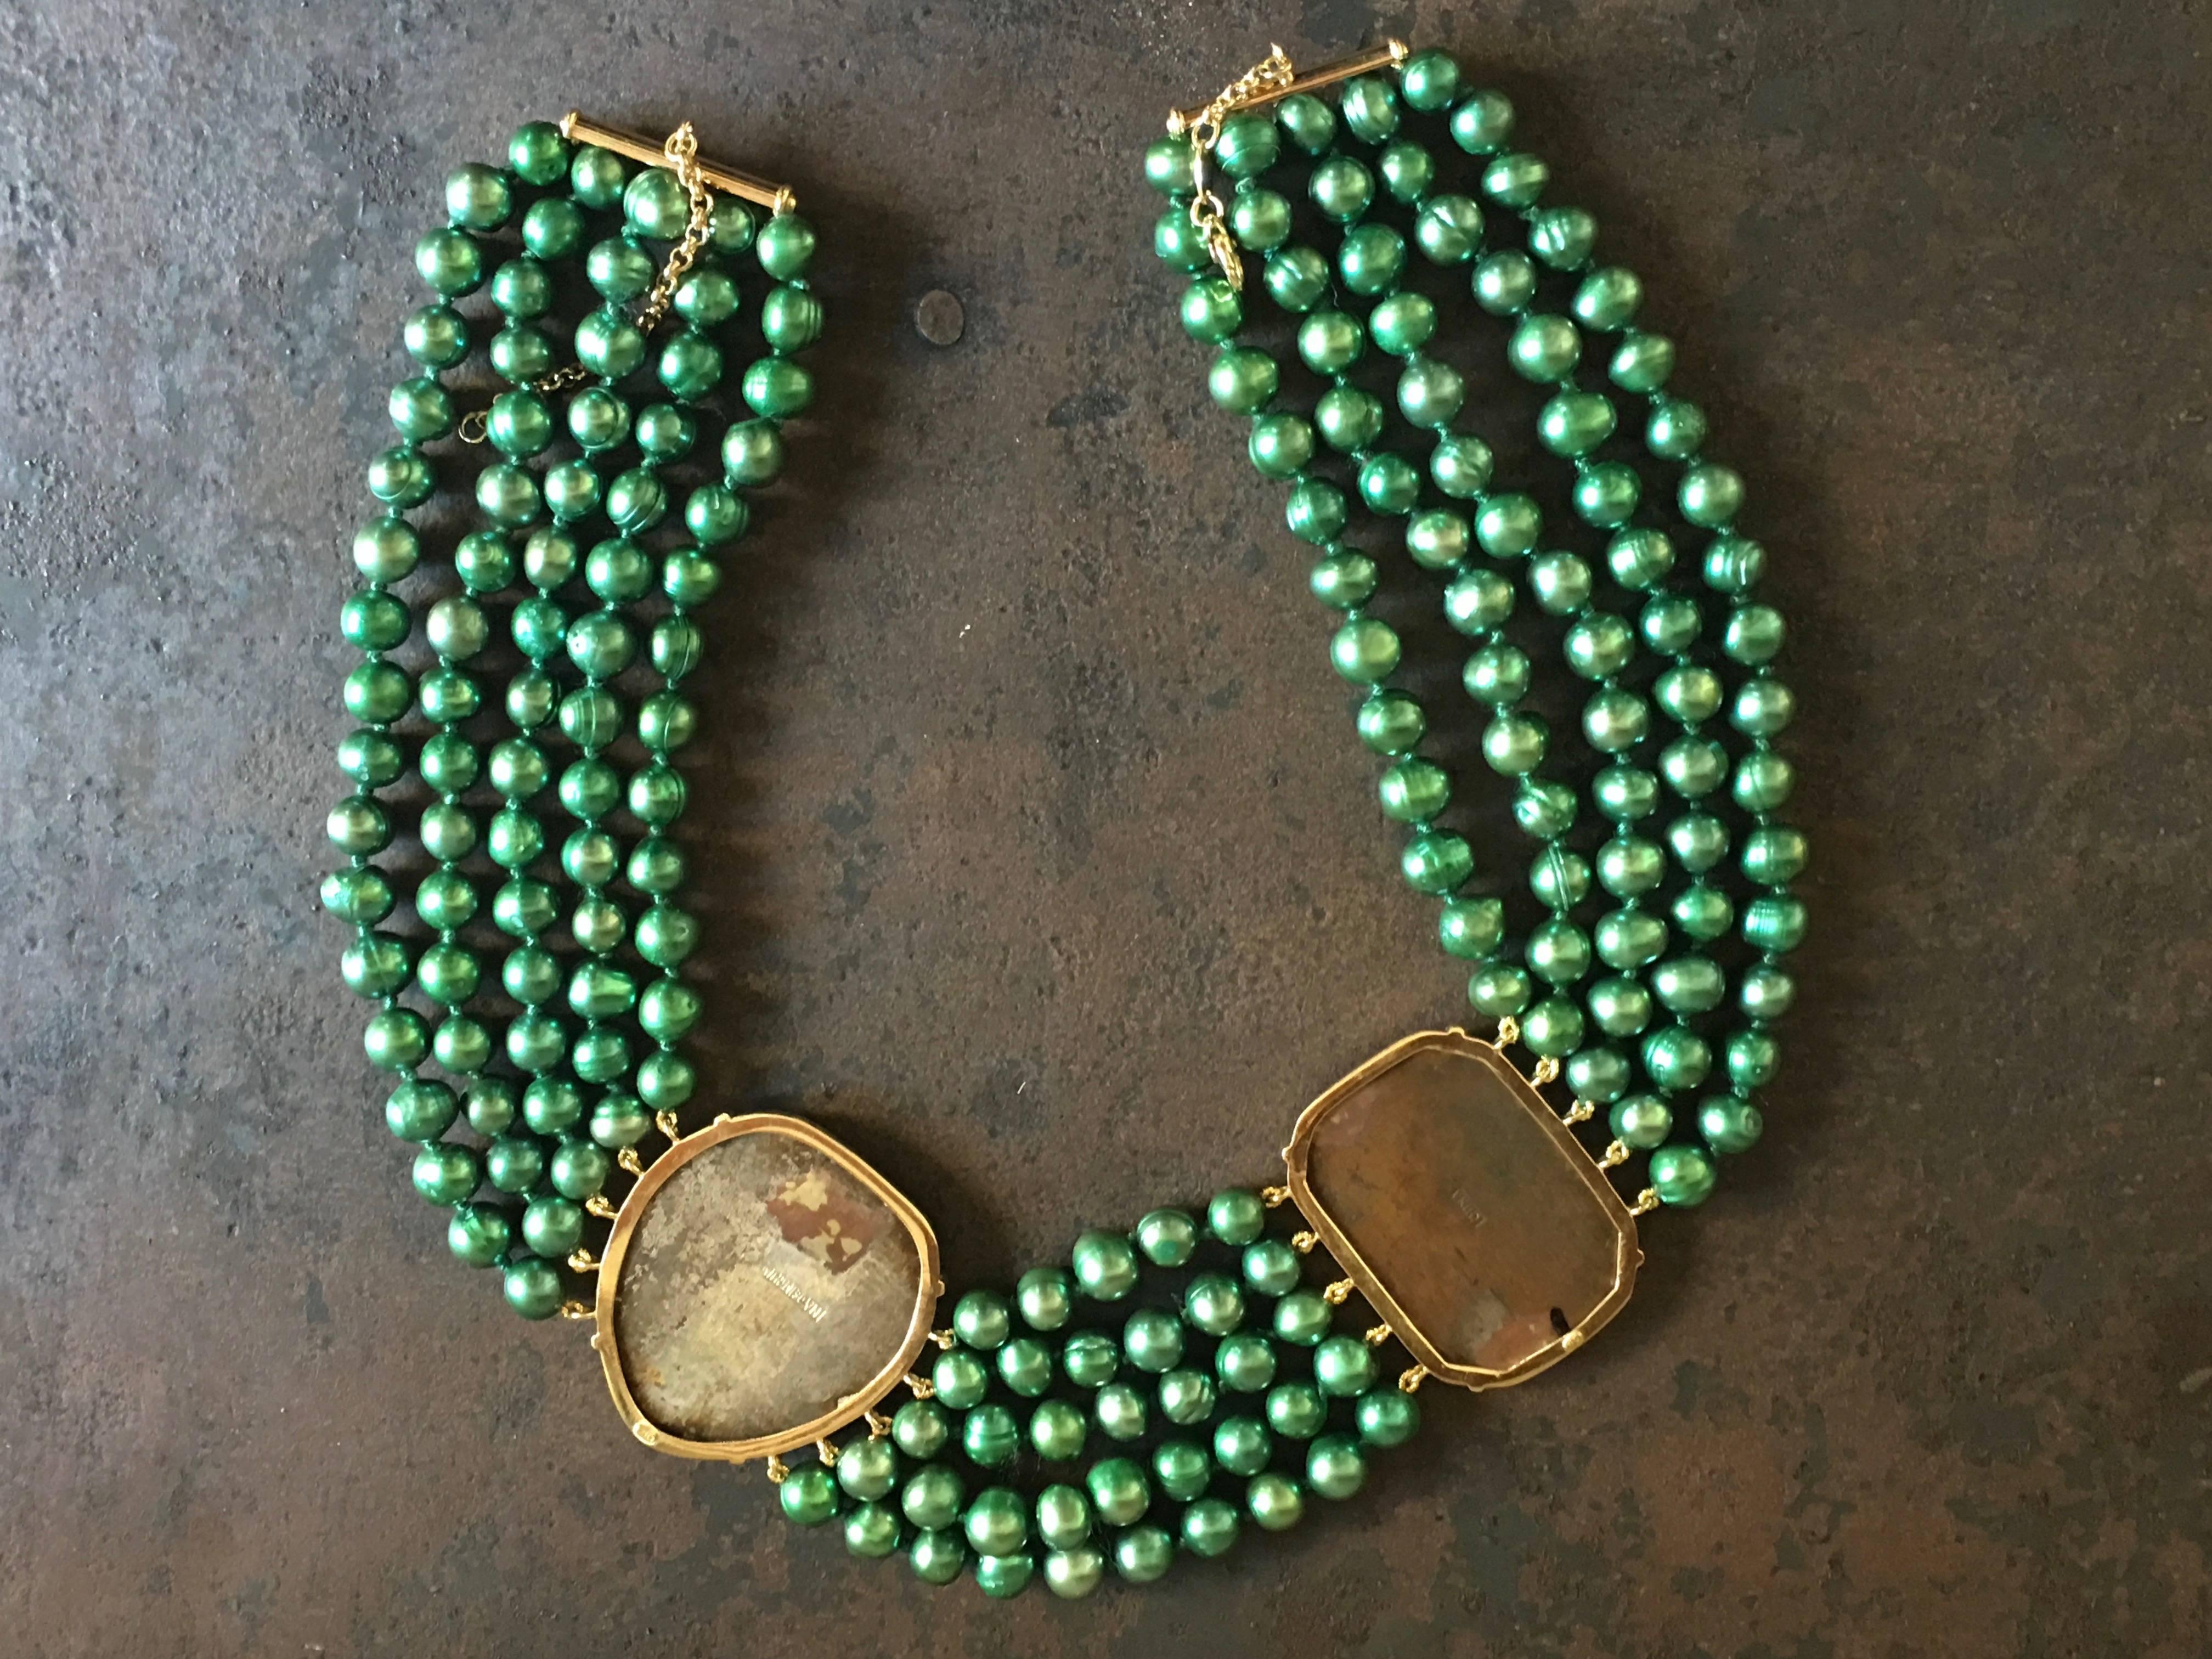 Halskette mit 5 String von morderè grünen Süßwasserperlen, 2 Antiquitäten chinesischen Lack mit dem ursprünglichen filigrane und Blumen gravieren Motiv.
Die 2 Lacke waren Kleiderklammern  von 1920.
Gold 18 k
Alle Schmuckstücke sind neu und wurden